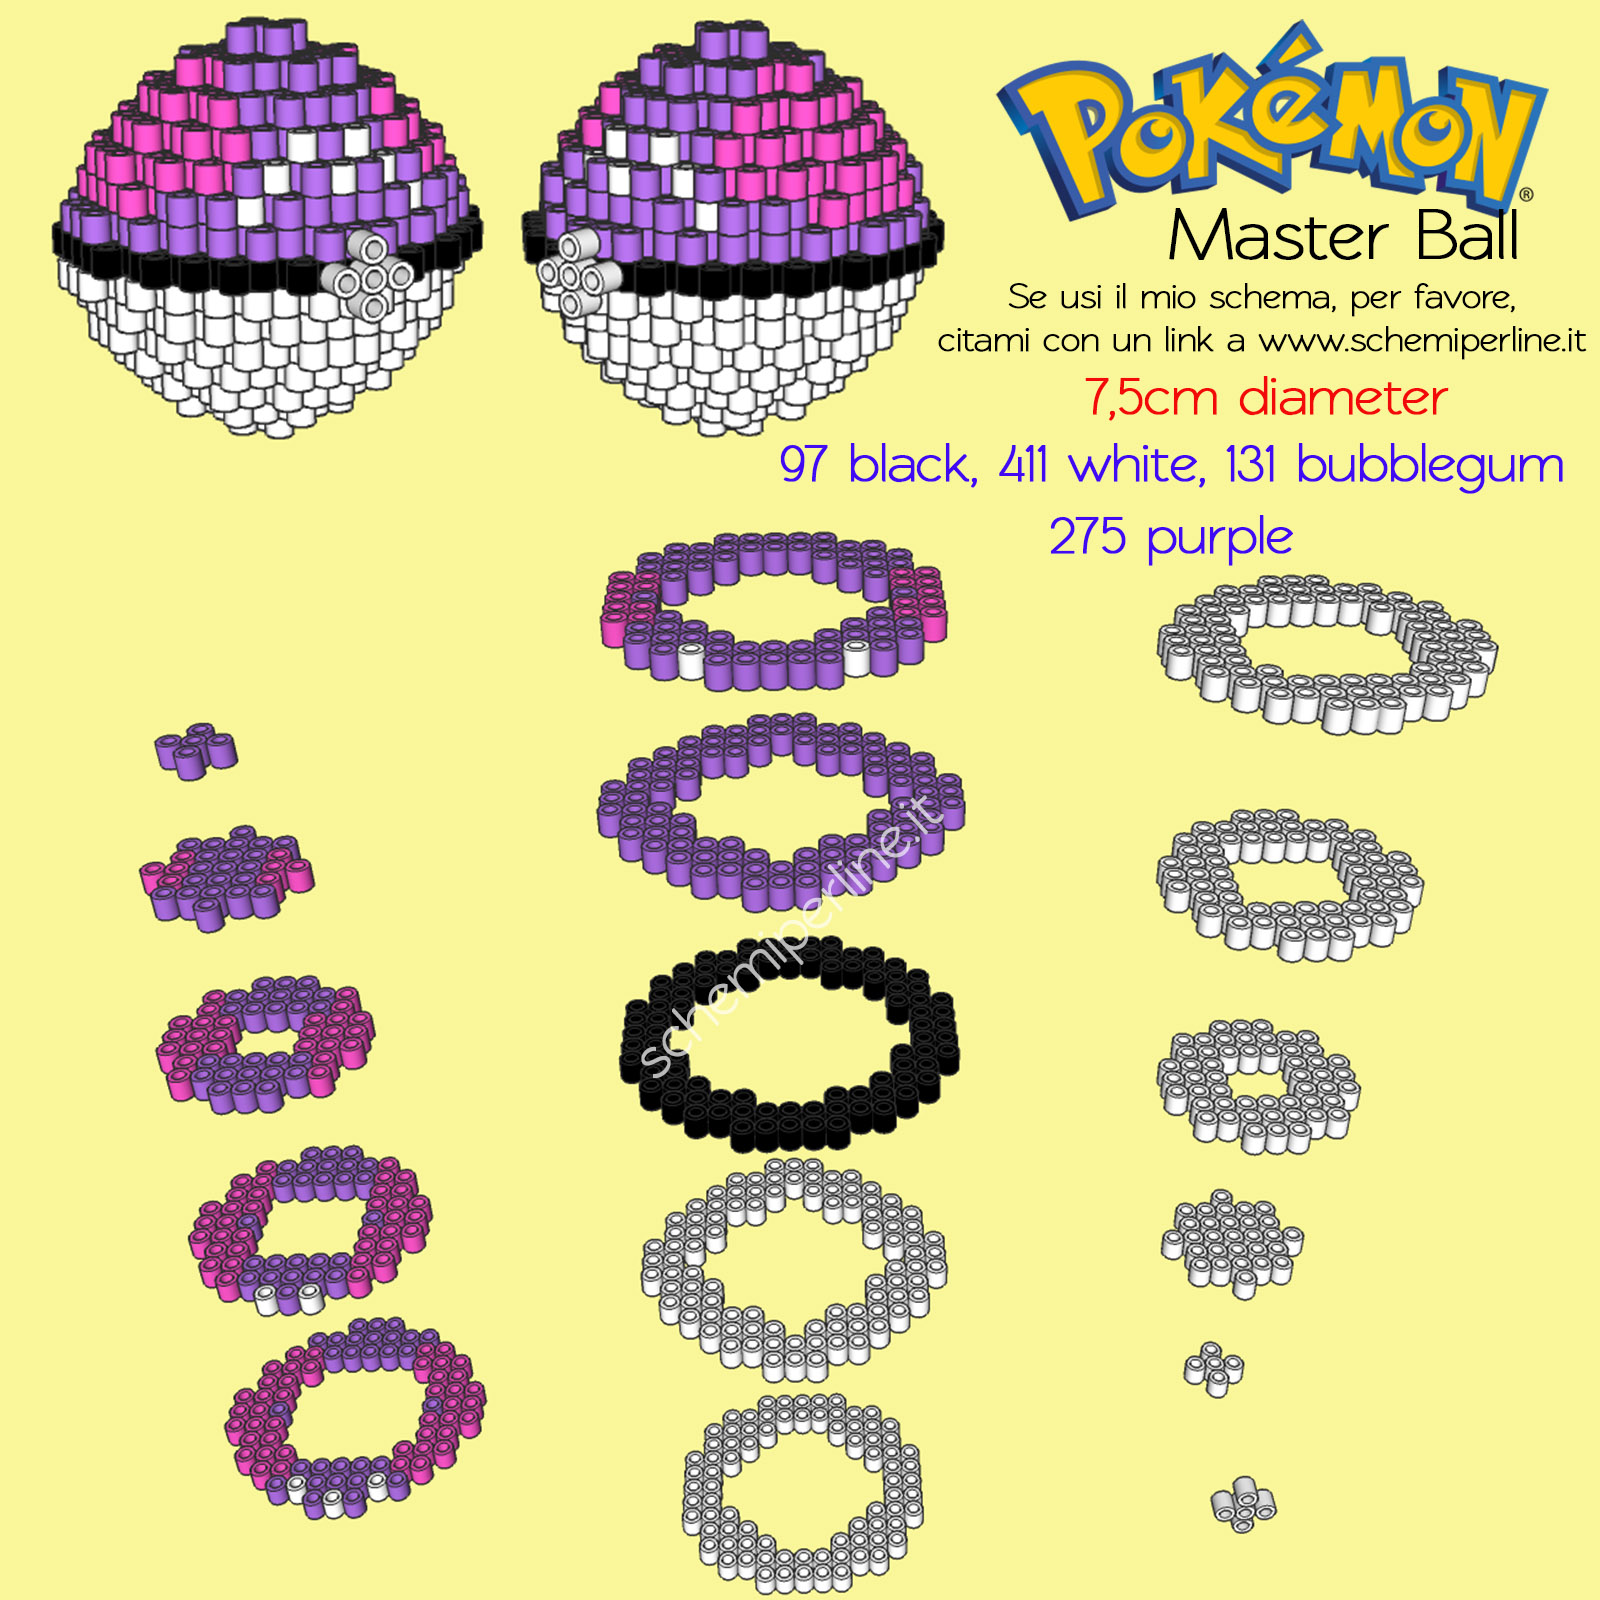 La Master Ball dei Pokemon in 3D con le Hama Beads o Pyssla schema gratis